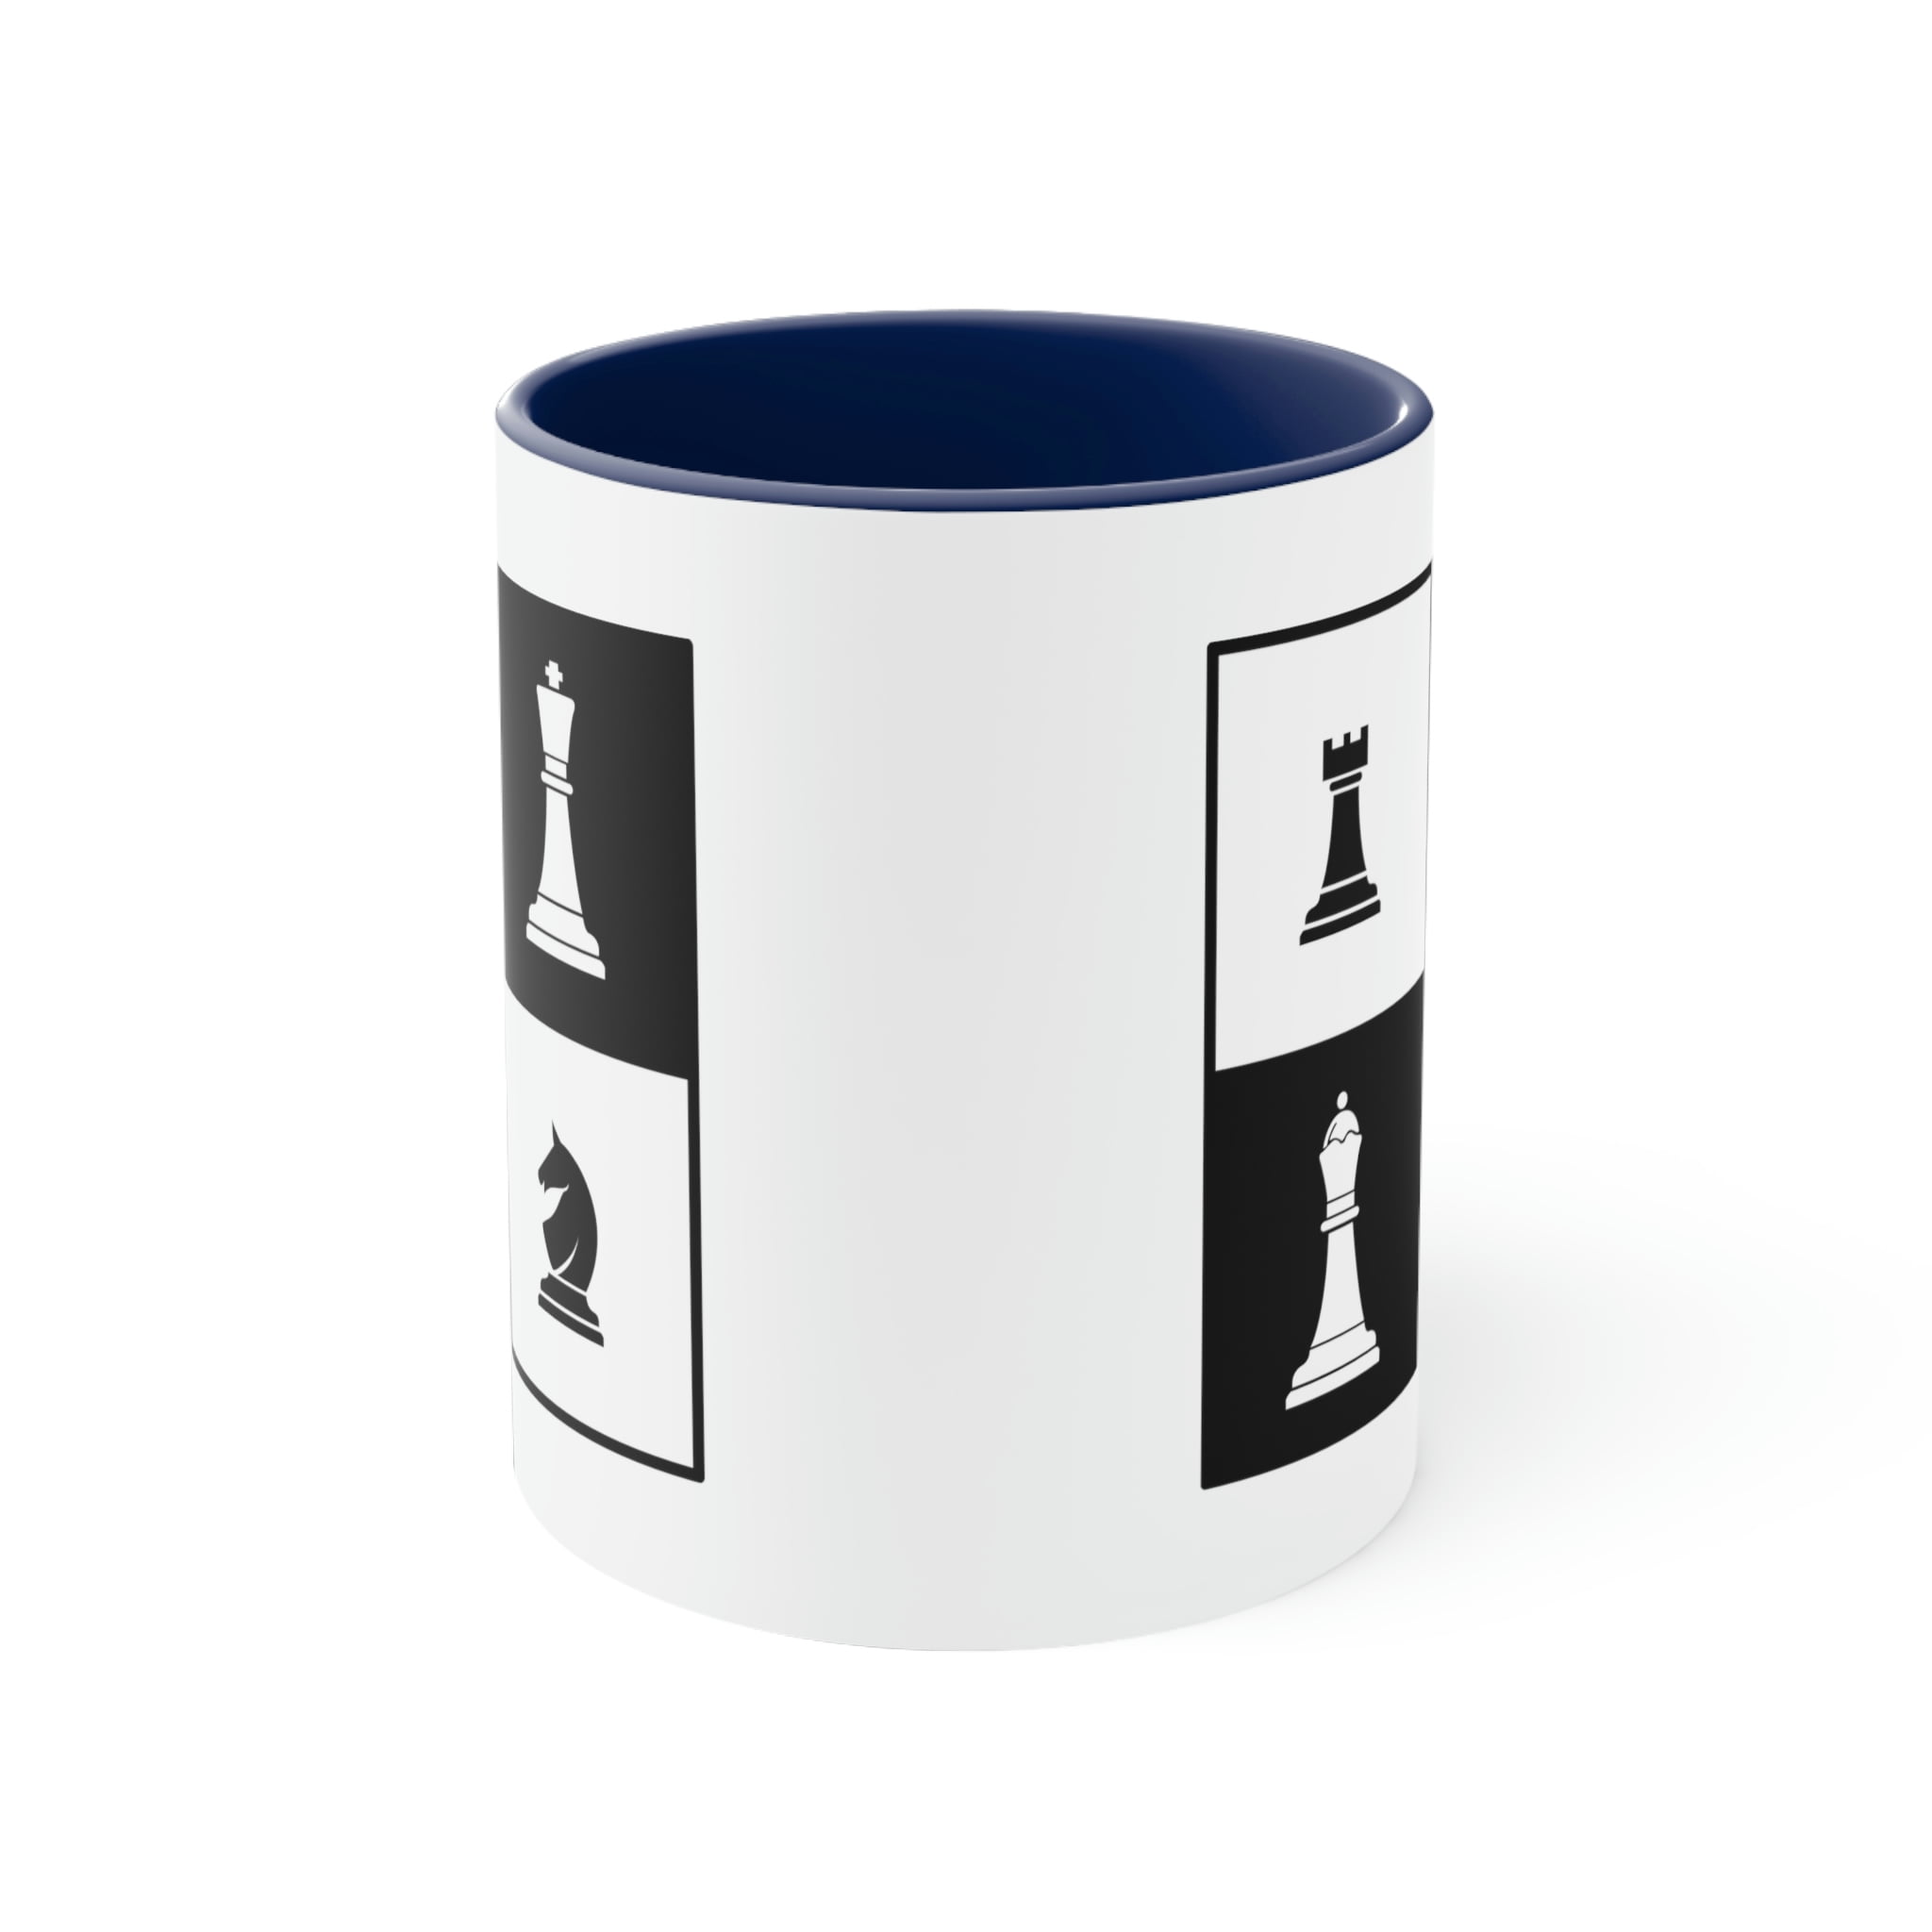 ▷Italian Game Chess Coffee Mug【BEST MUGS 2022 】 – Chess4pro